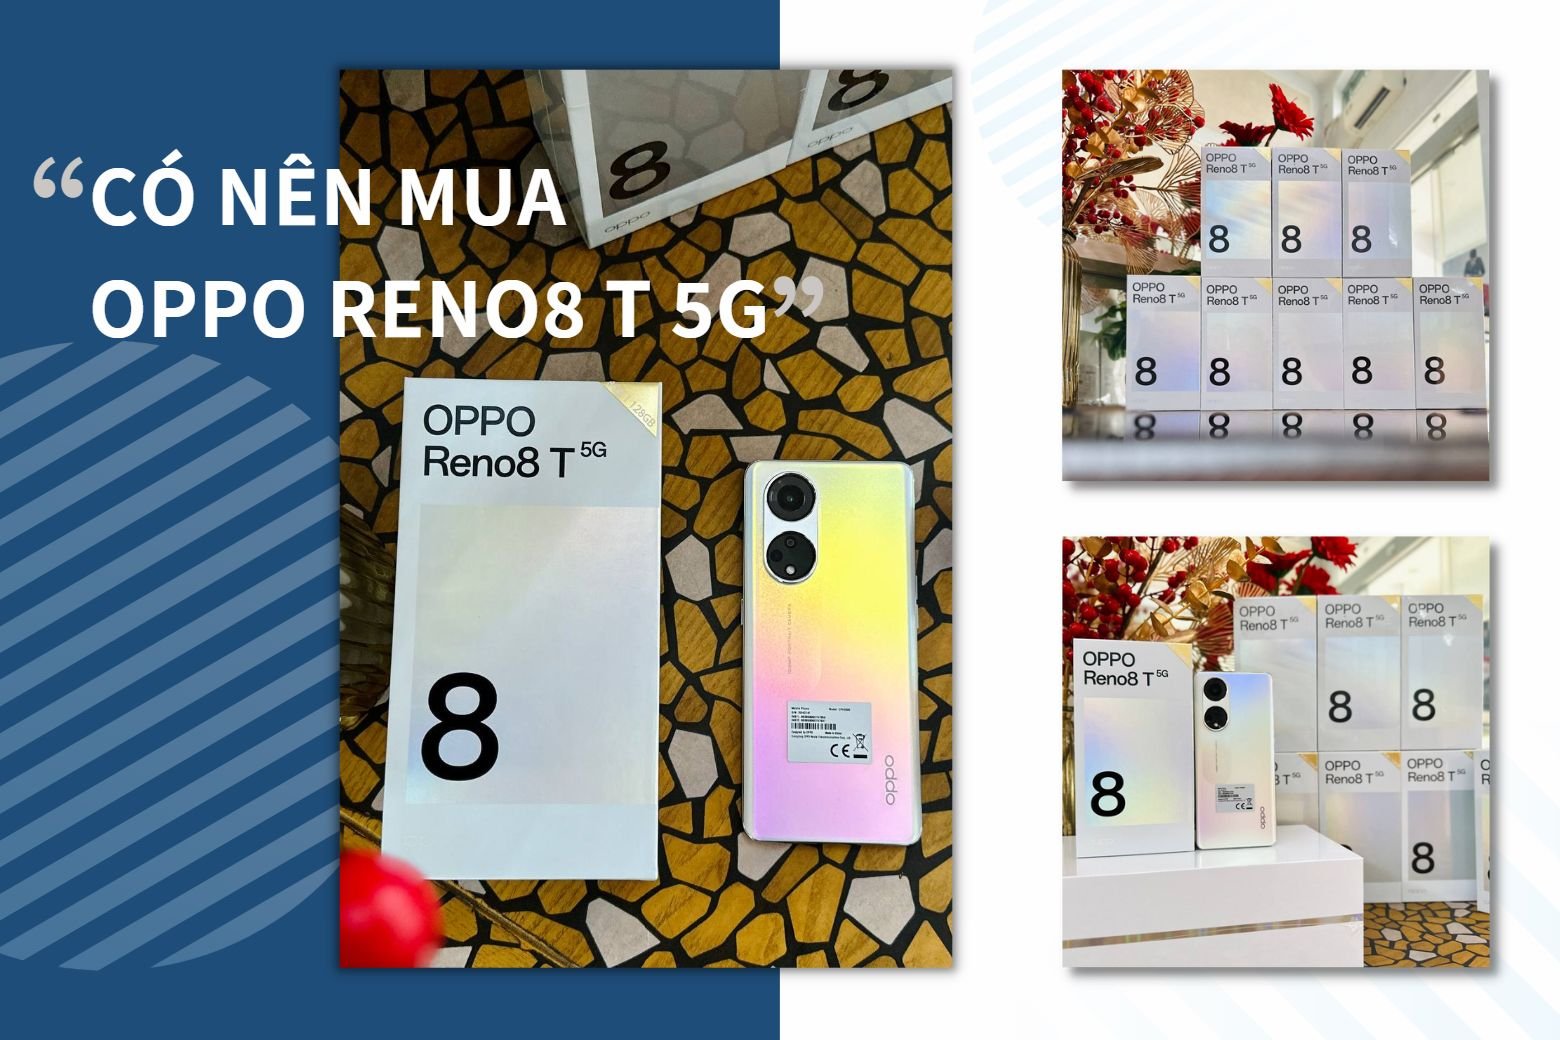 Có nên mua Oppo Reno8 T 5G ở thời điểm hiện tại? Mua Oppo Reno8 T 5G ở đâu để có giá tốt nhất?